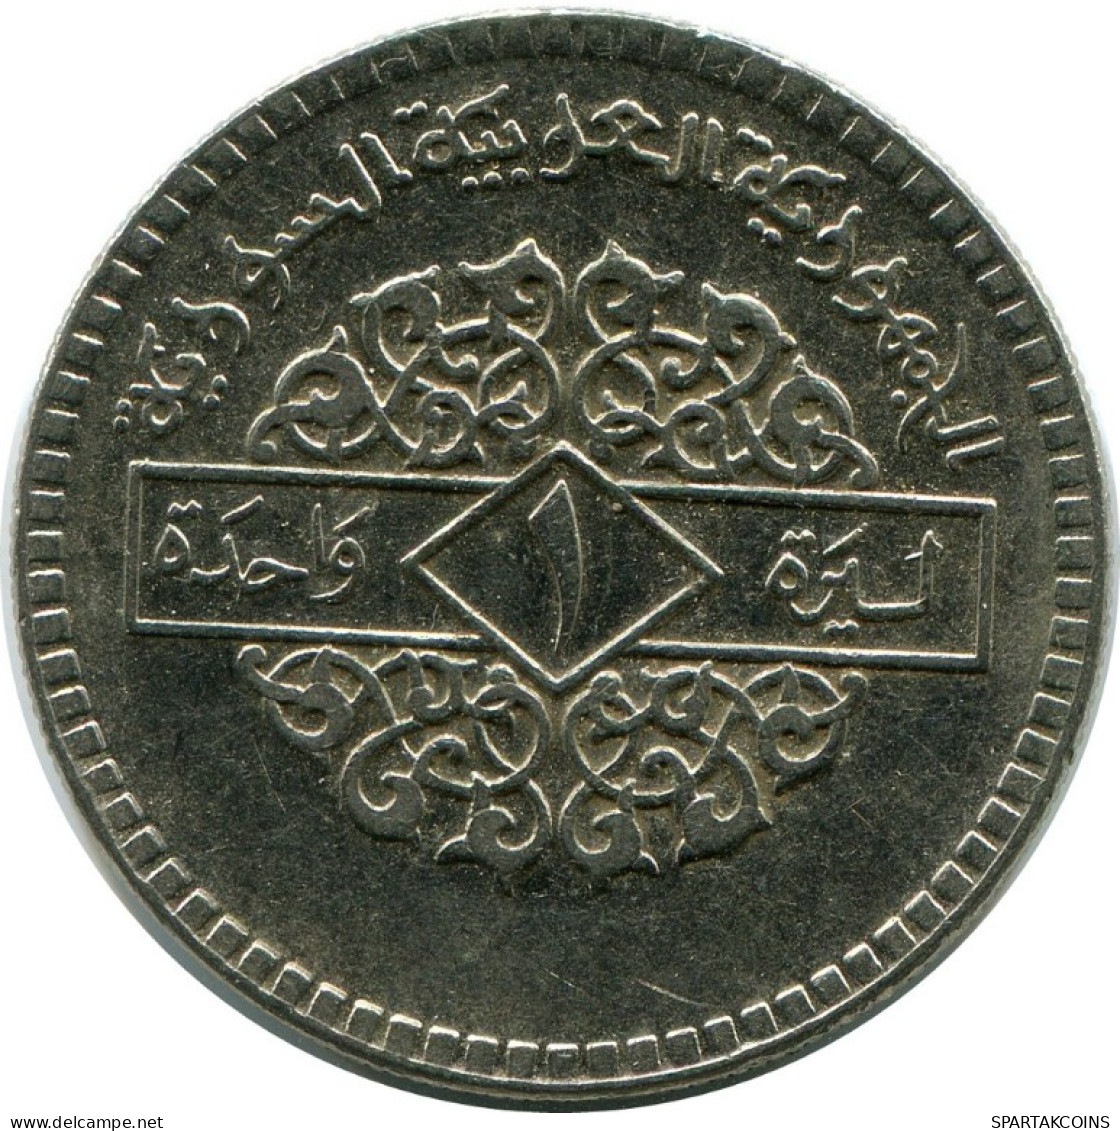 1 LIRA 1974 SYRIA Islamic Coin #AH656.3.U.A - Siria